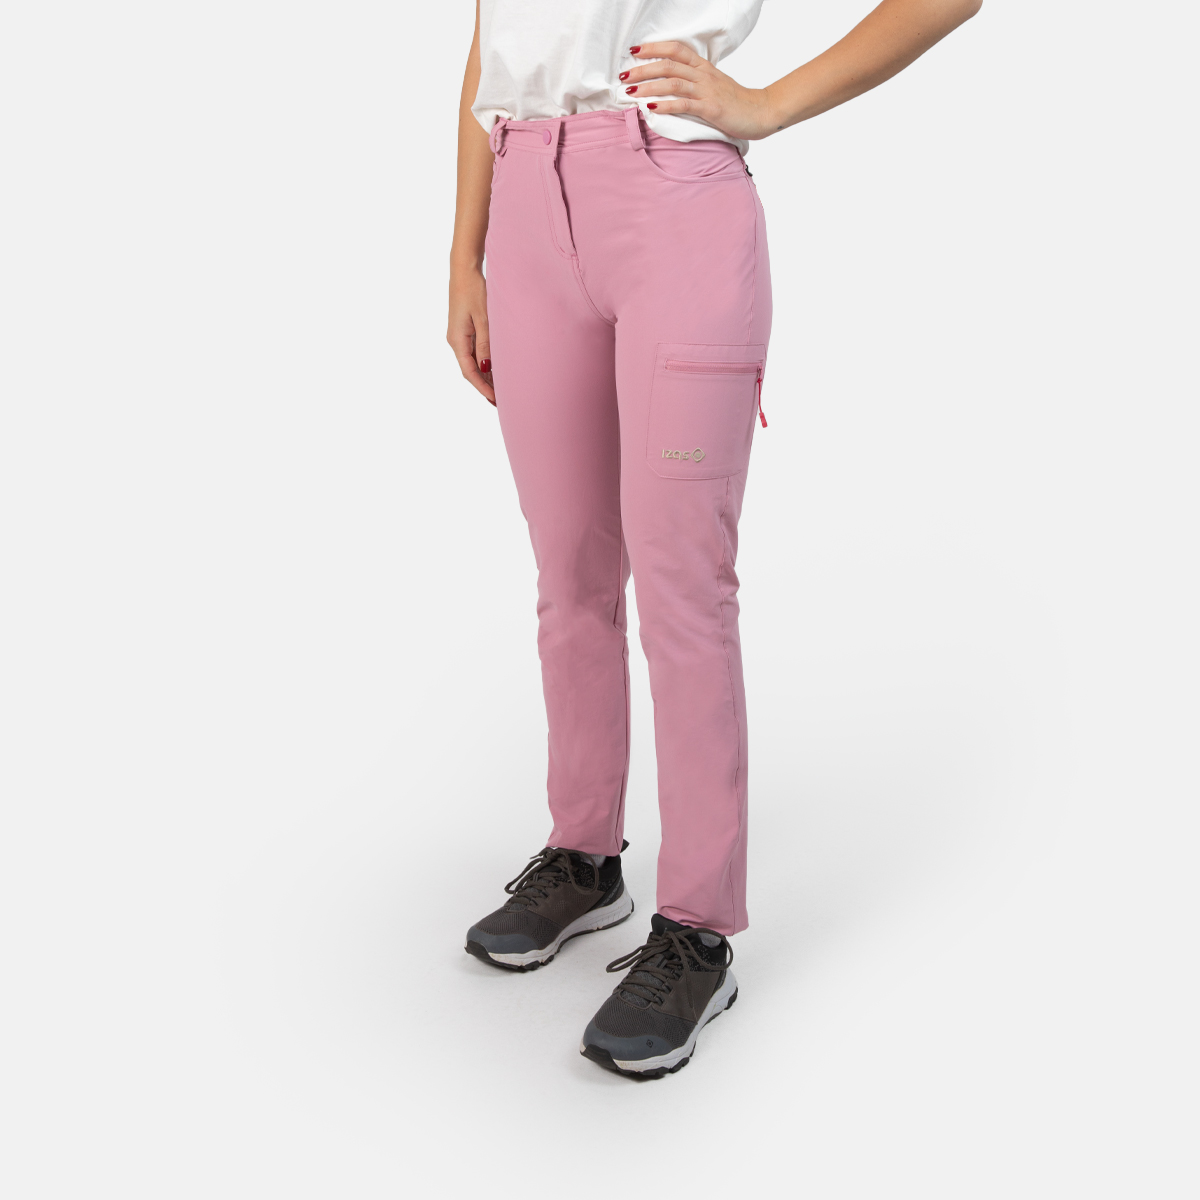 Pantalón rosa Escalada y Trekking Mujer Saona Gerbera. Compra online